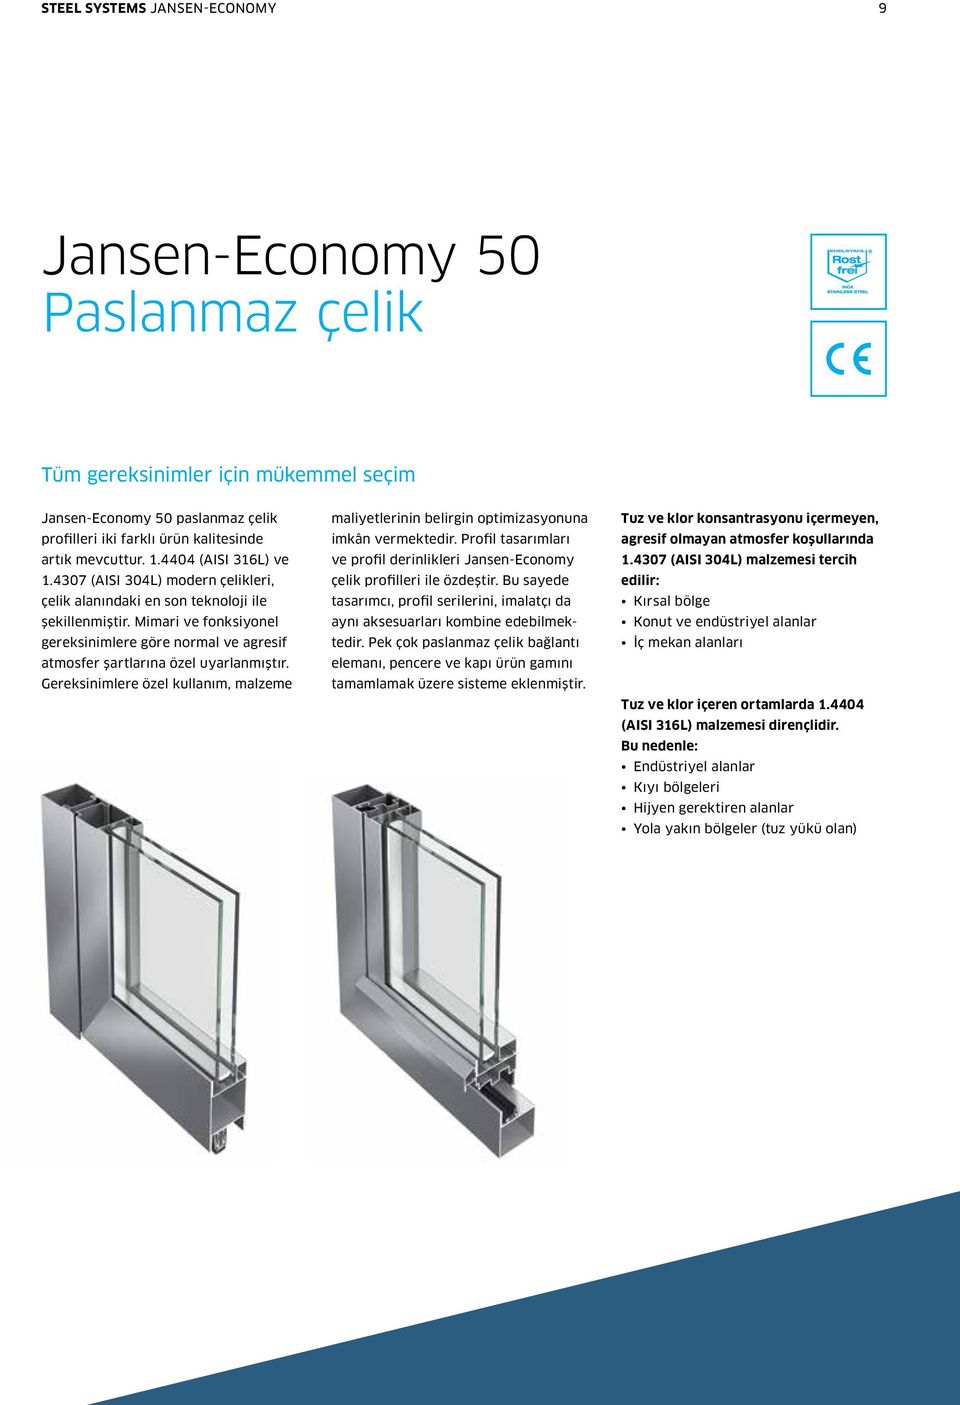 Gereksinimlere özel kullanım, malzeme maliyetlerinin belirgin optimizasyonuna imkân vermektedir. Profil tasarımları ve profil derinlikleri Jansen-Economy çelik profilleri ile özdeştir.